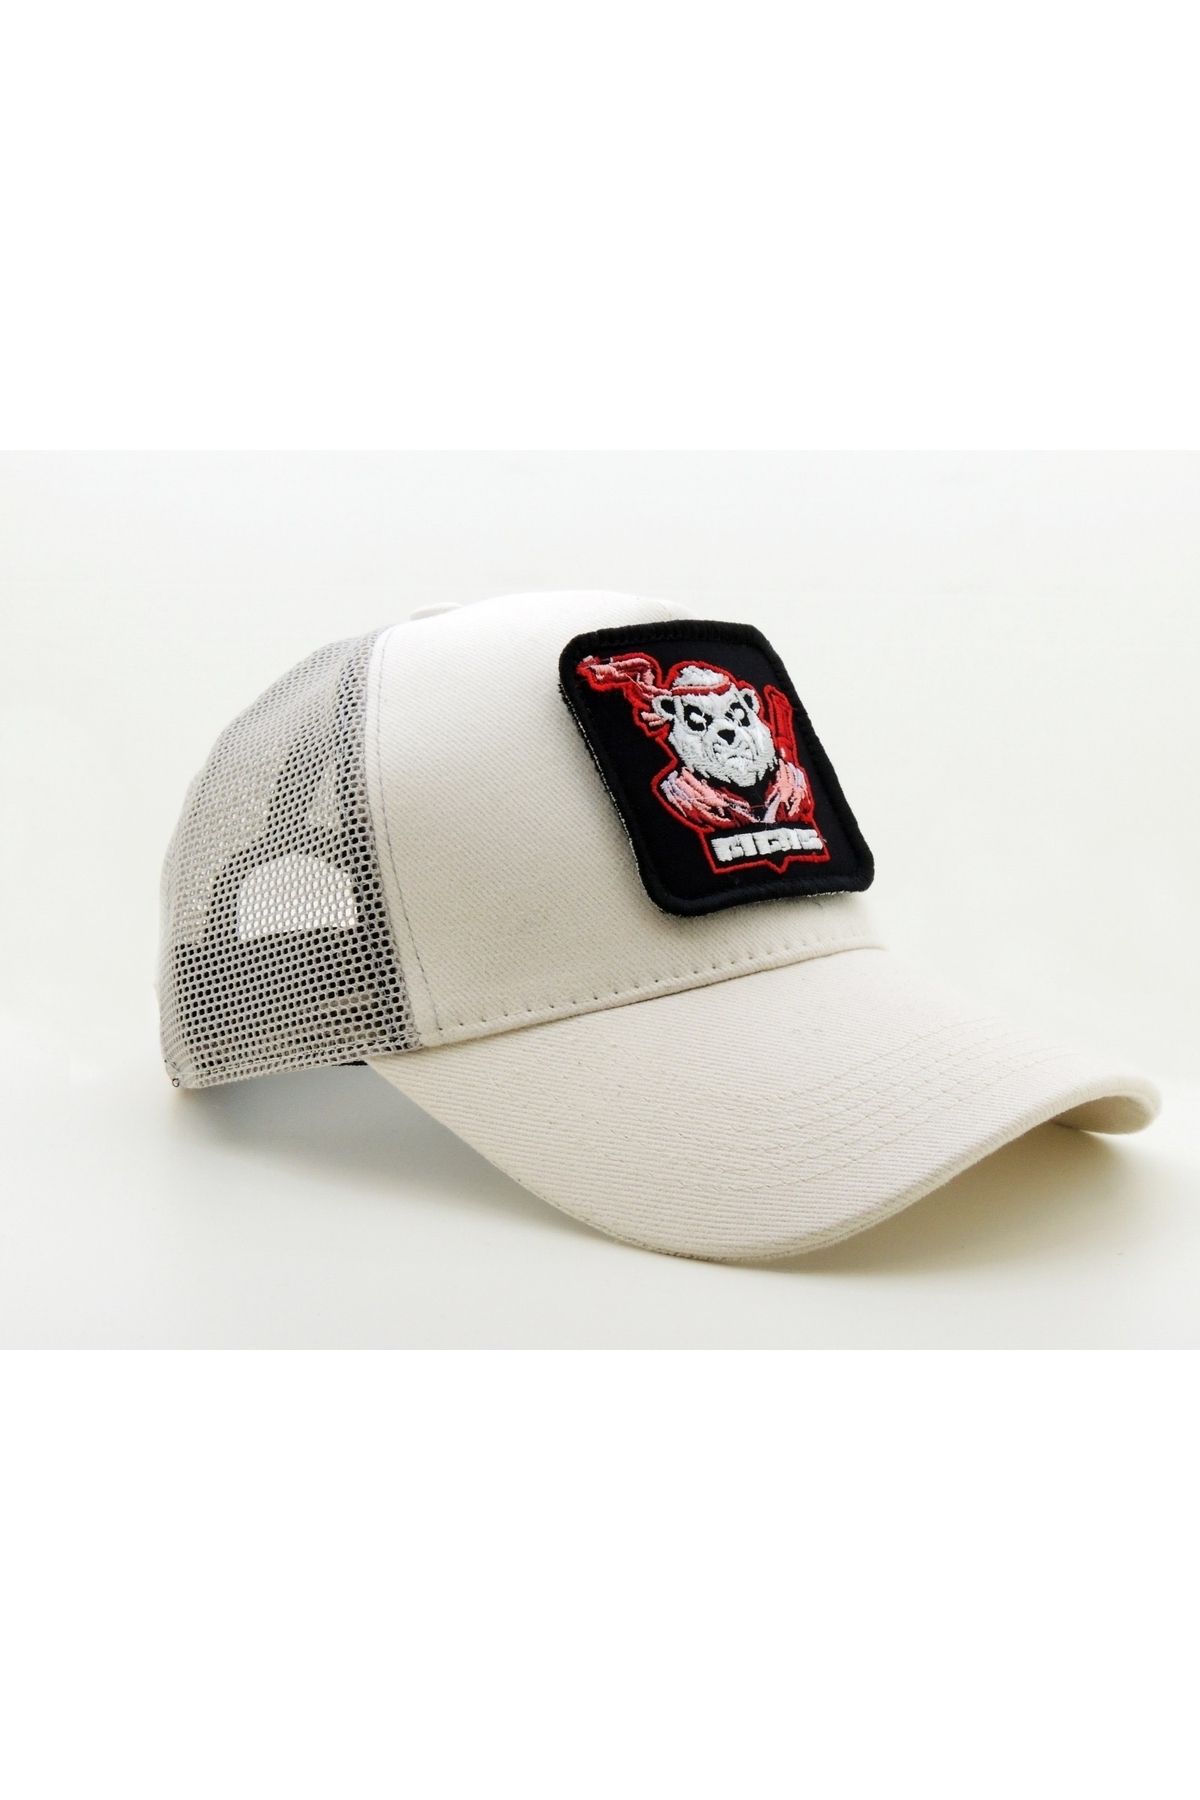 CityGoat Trucker (NAKIŞ) Panda Titas Logolu Unisex Beyaz Şapka (CAP)